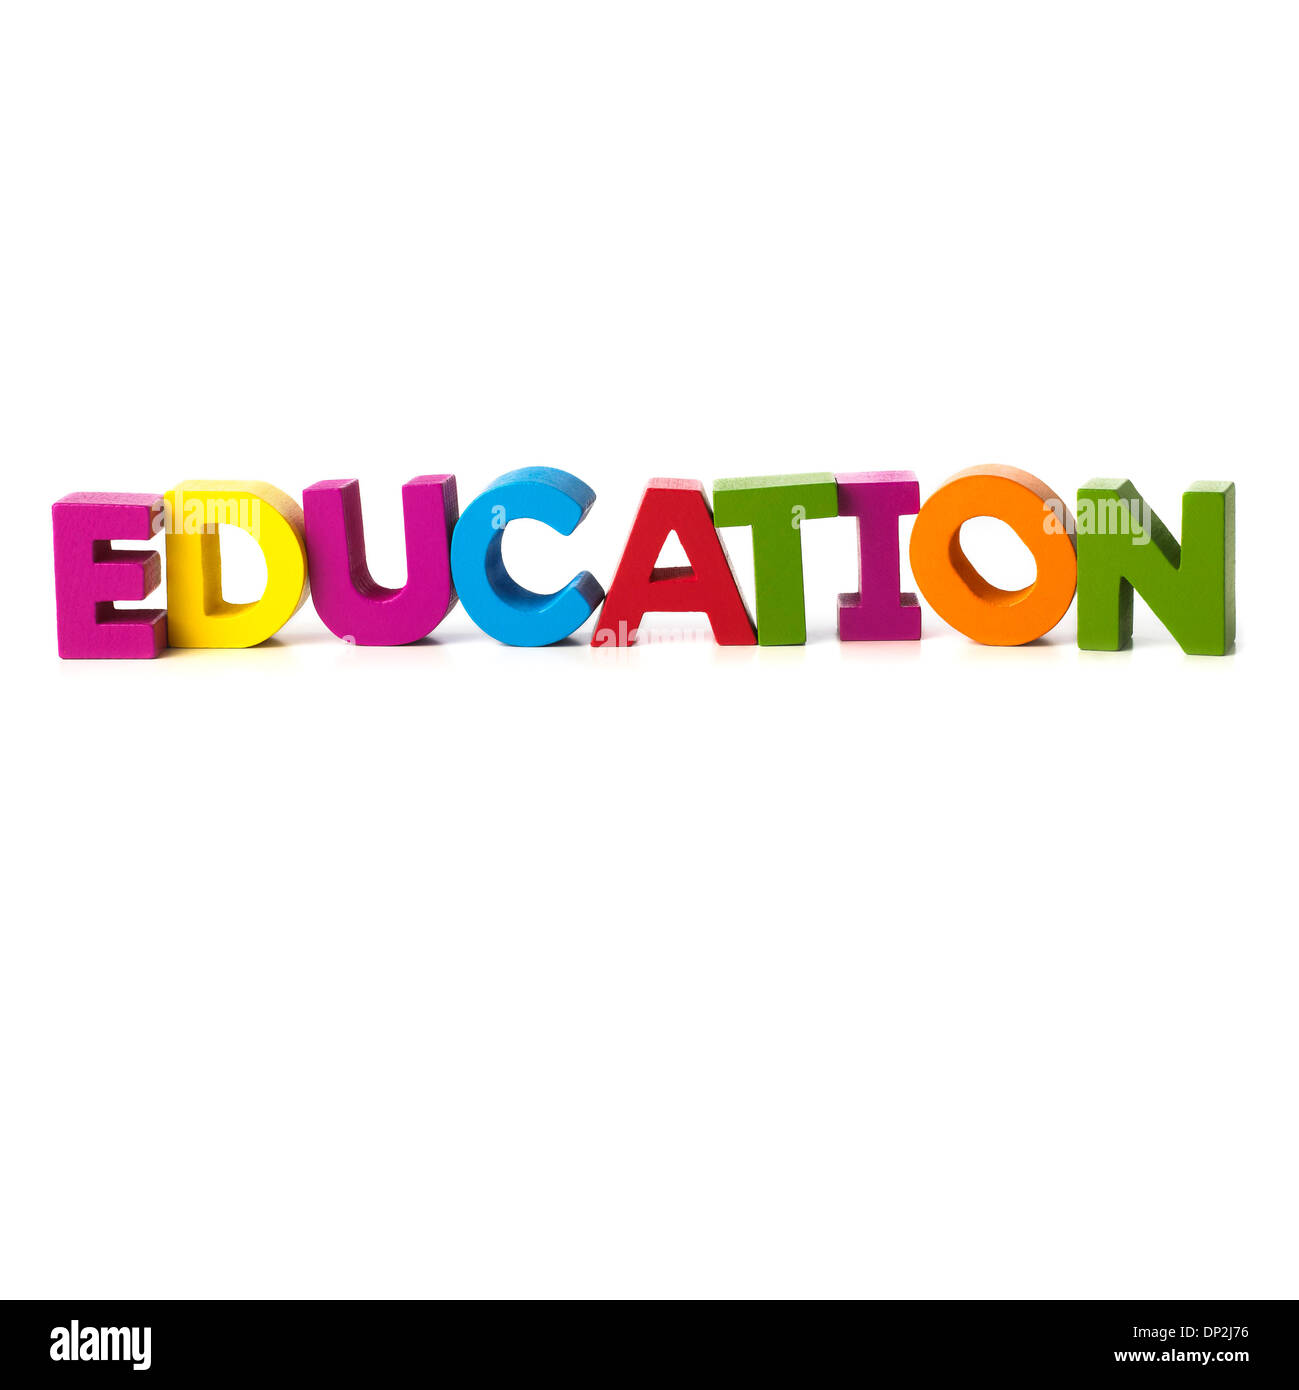 L'éducation, conceptual image Banque D'Images